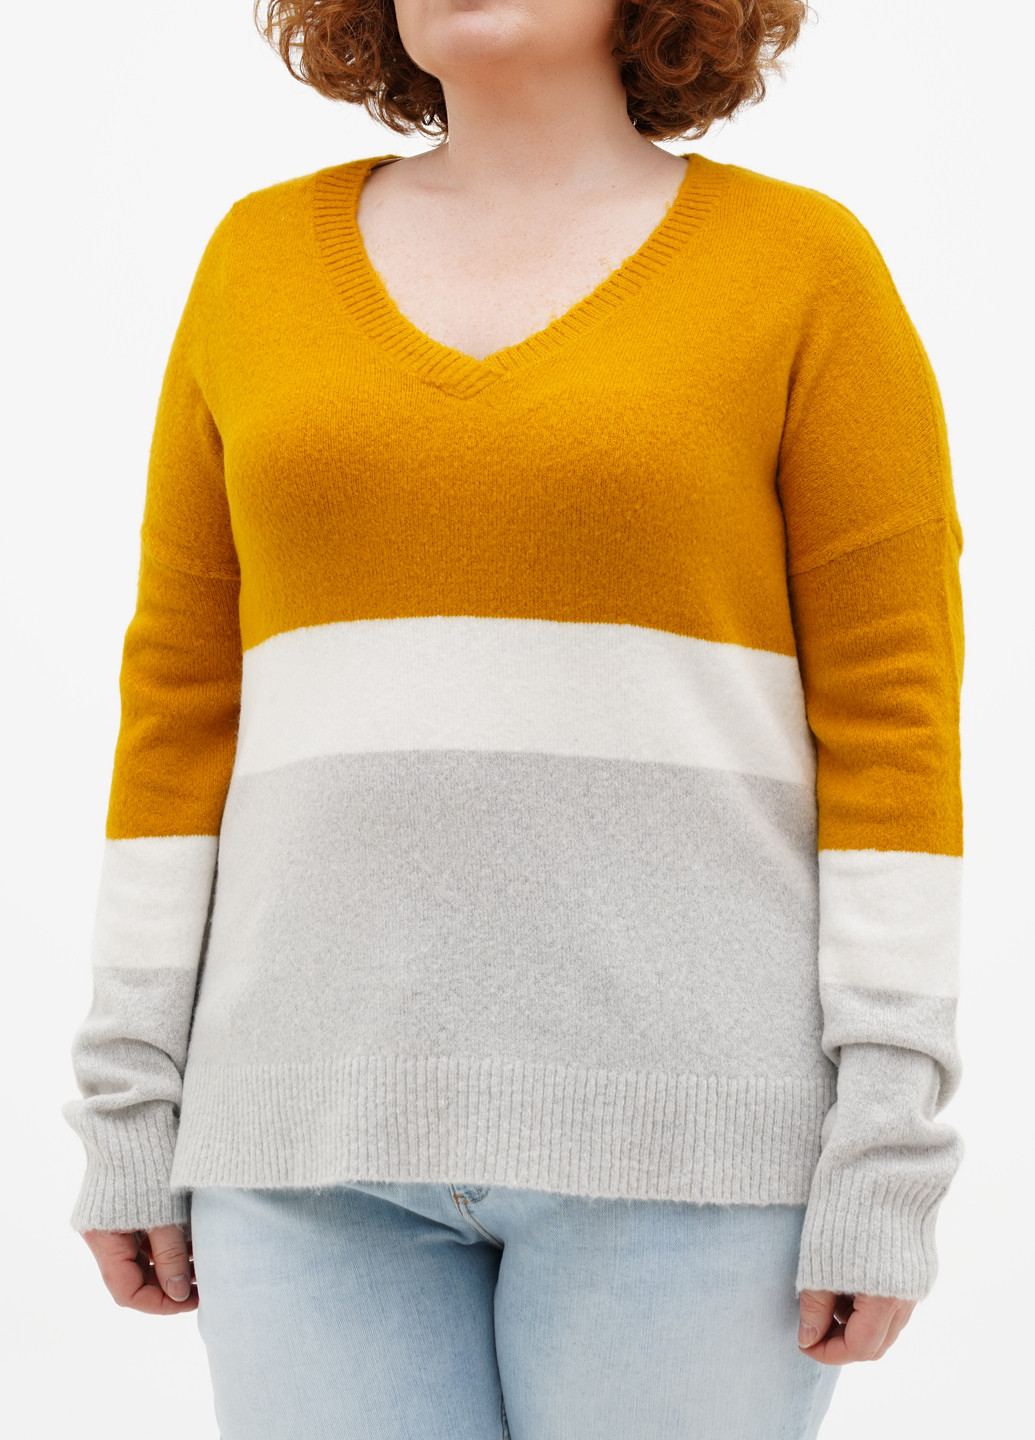 Комбинированный демисезонный пуловер пуловер S.Oliver